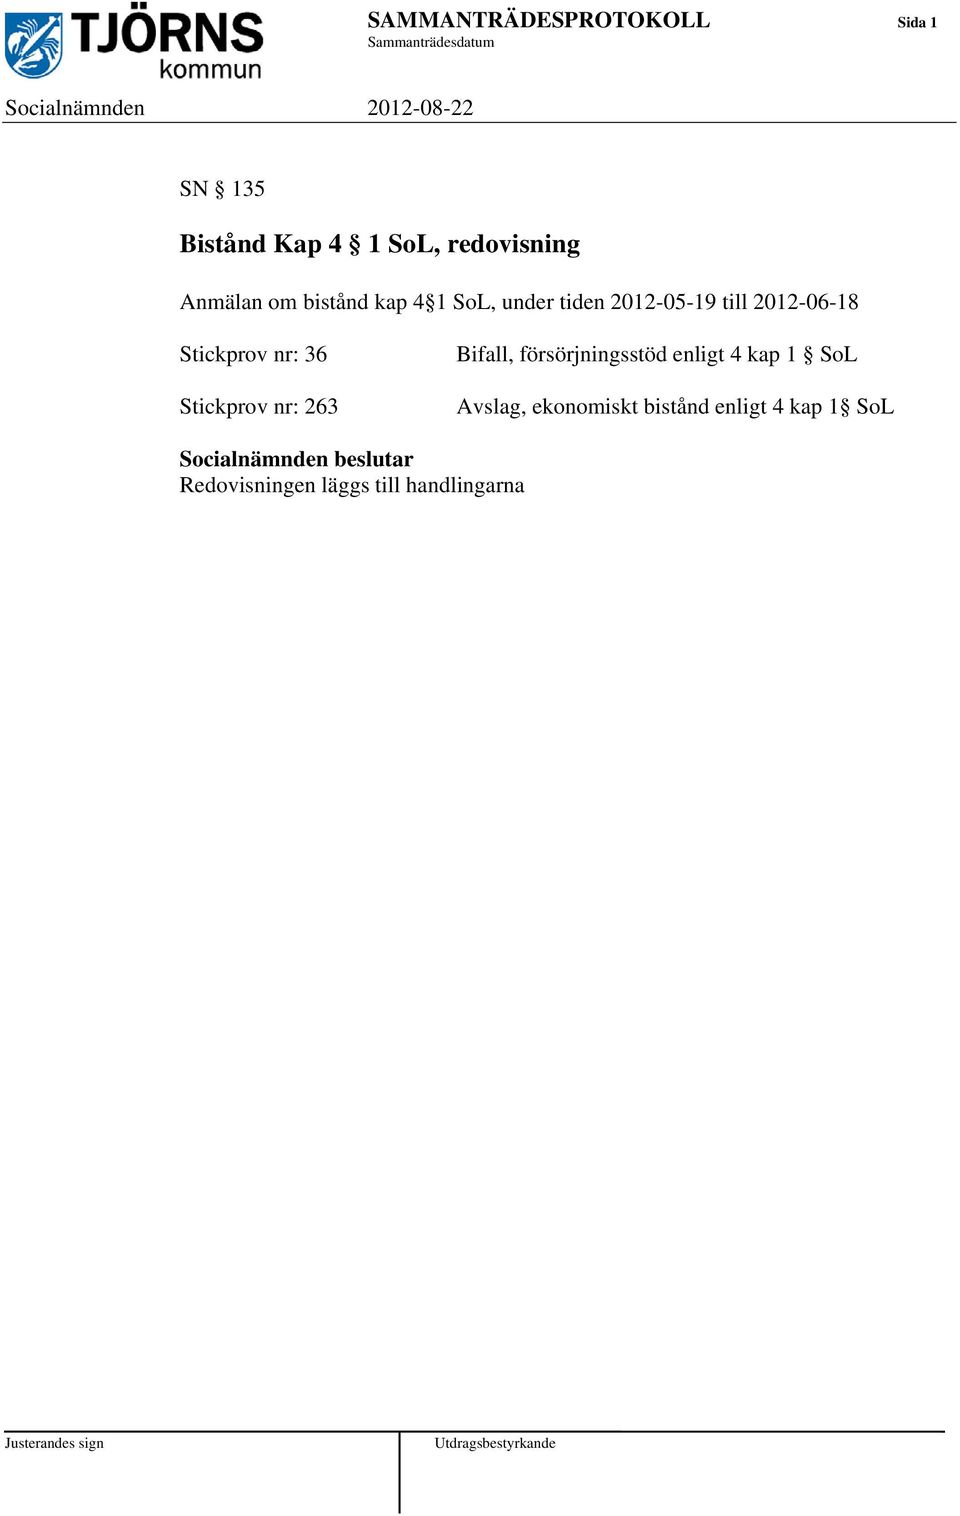 2012-06-18 Stickprov nr: 36 Stickprov nr: 263 Bifall, försörjningsstöd enligt 4